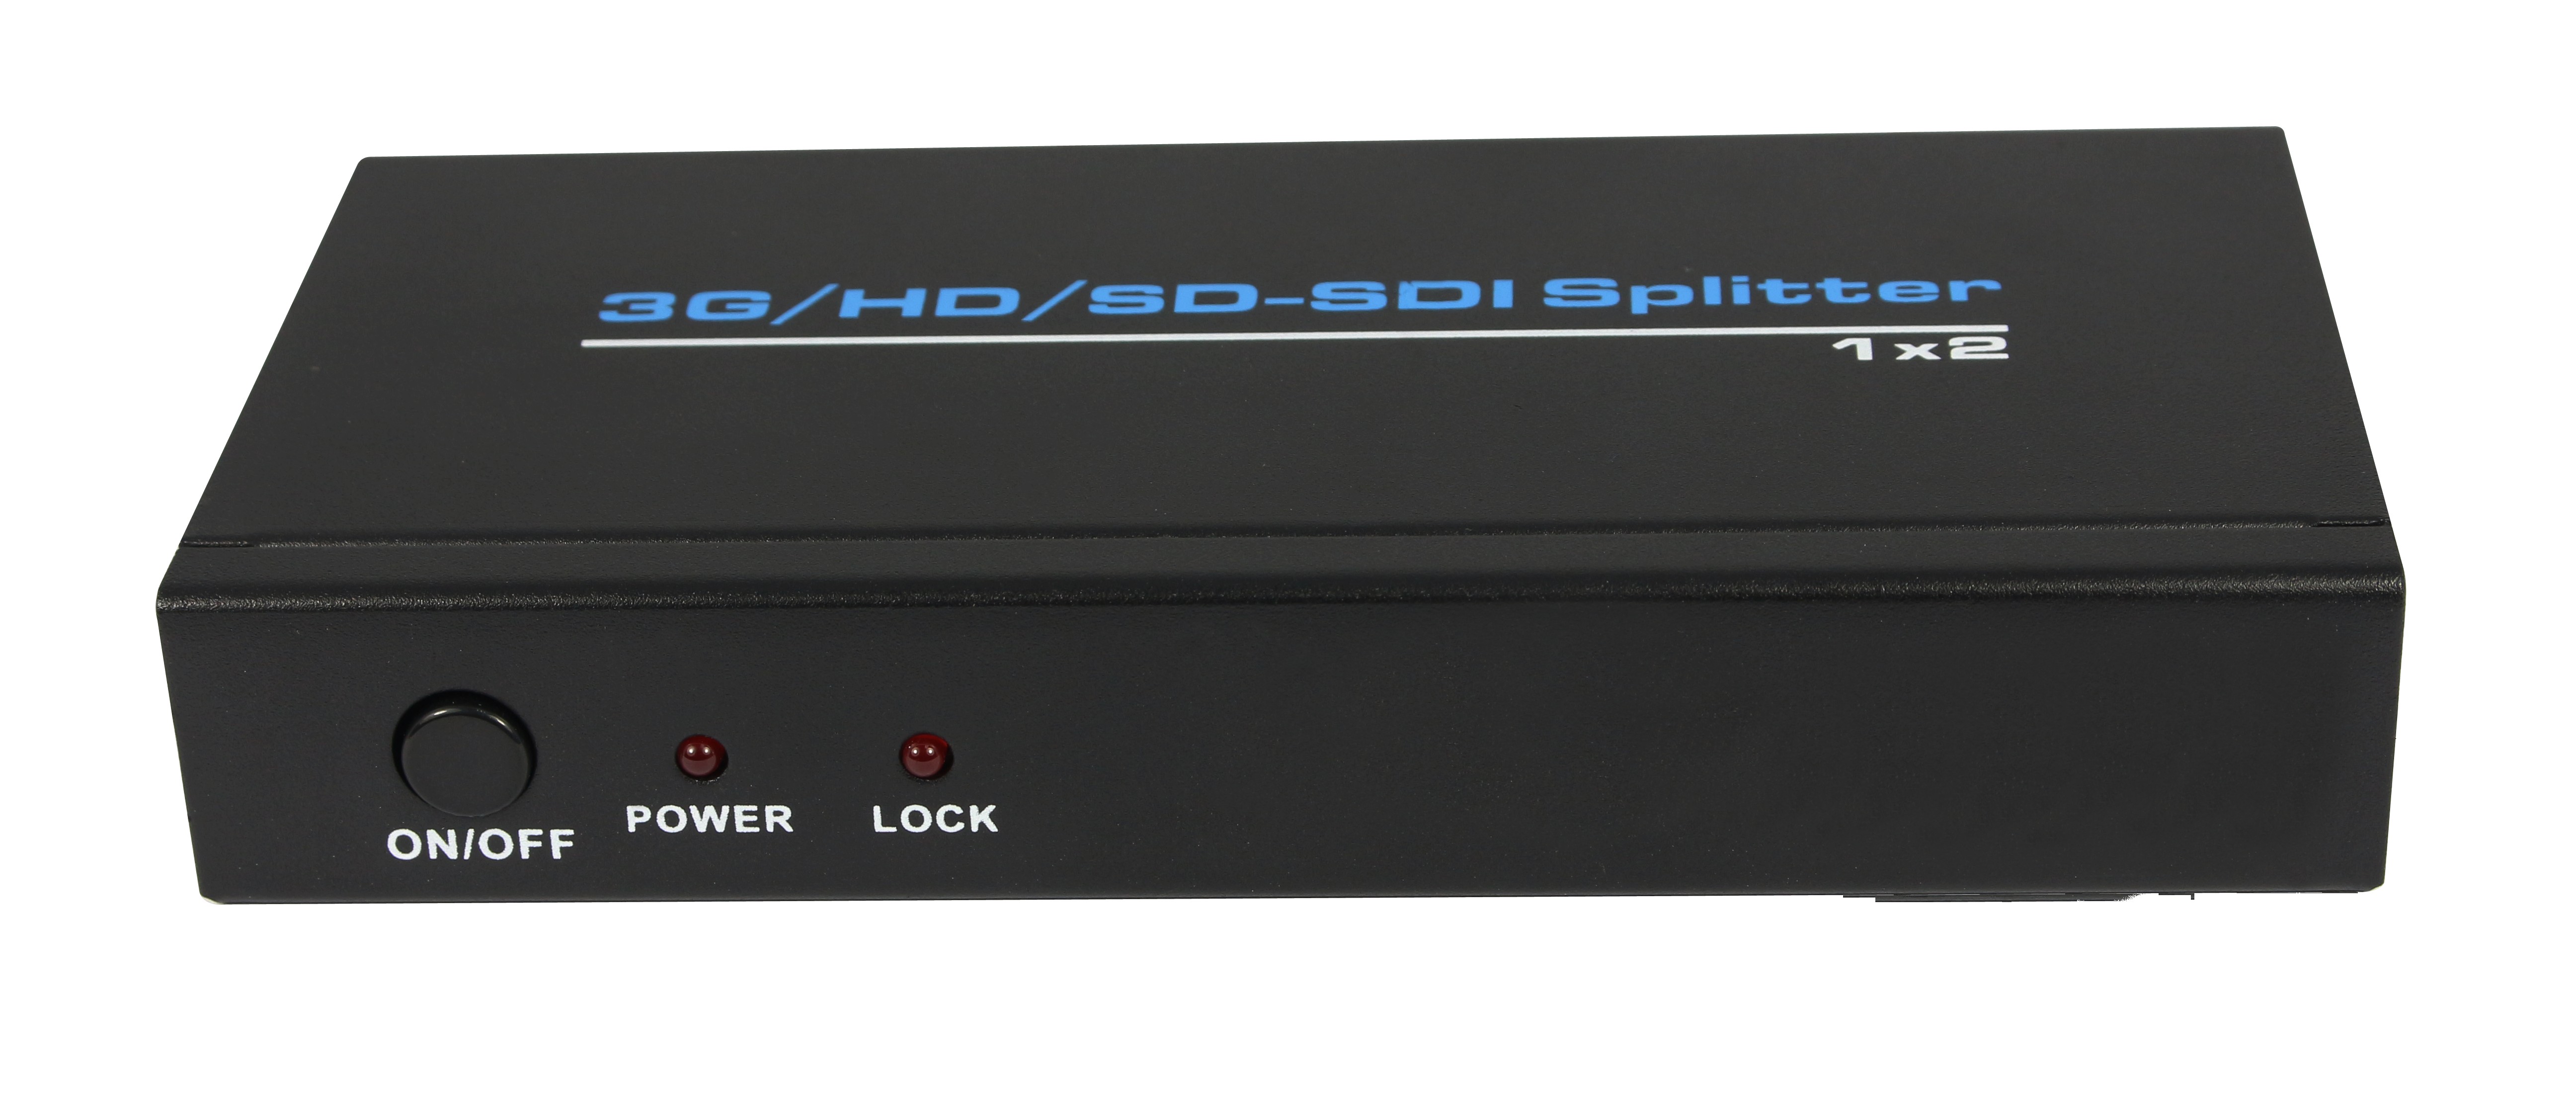 VOXLINK 3G/HD/SD_SDI Splitter 1 x 2  EU